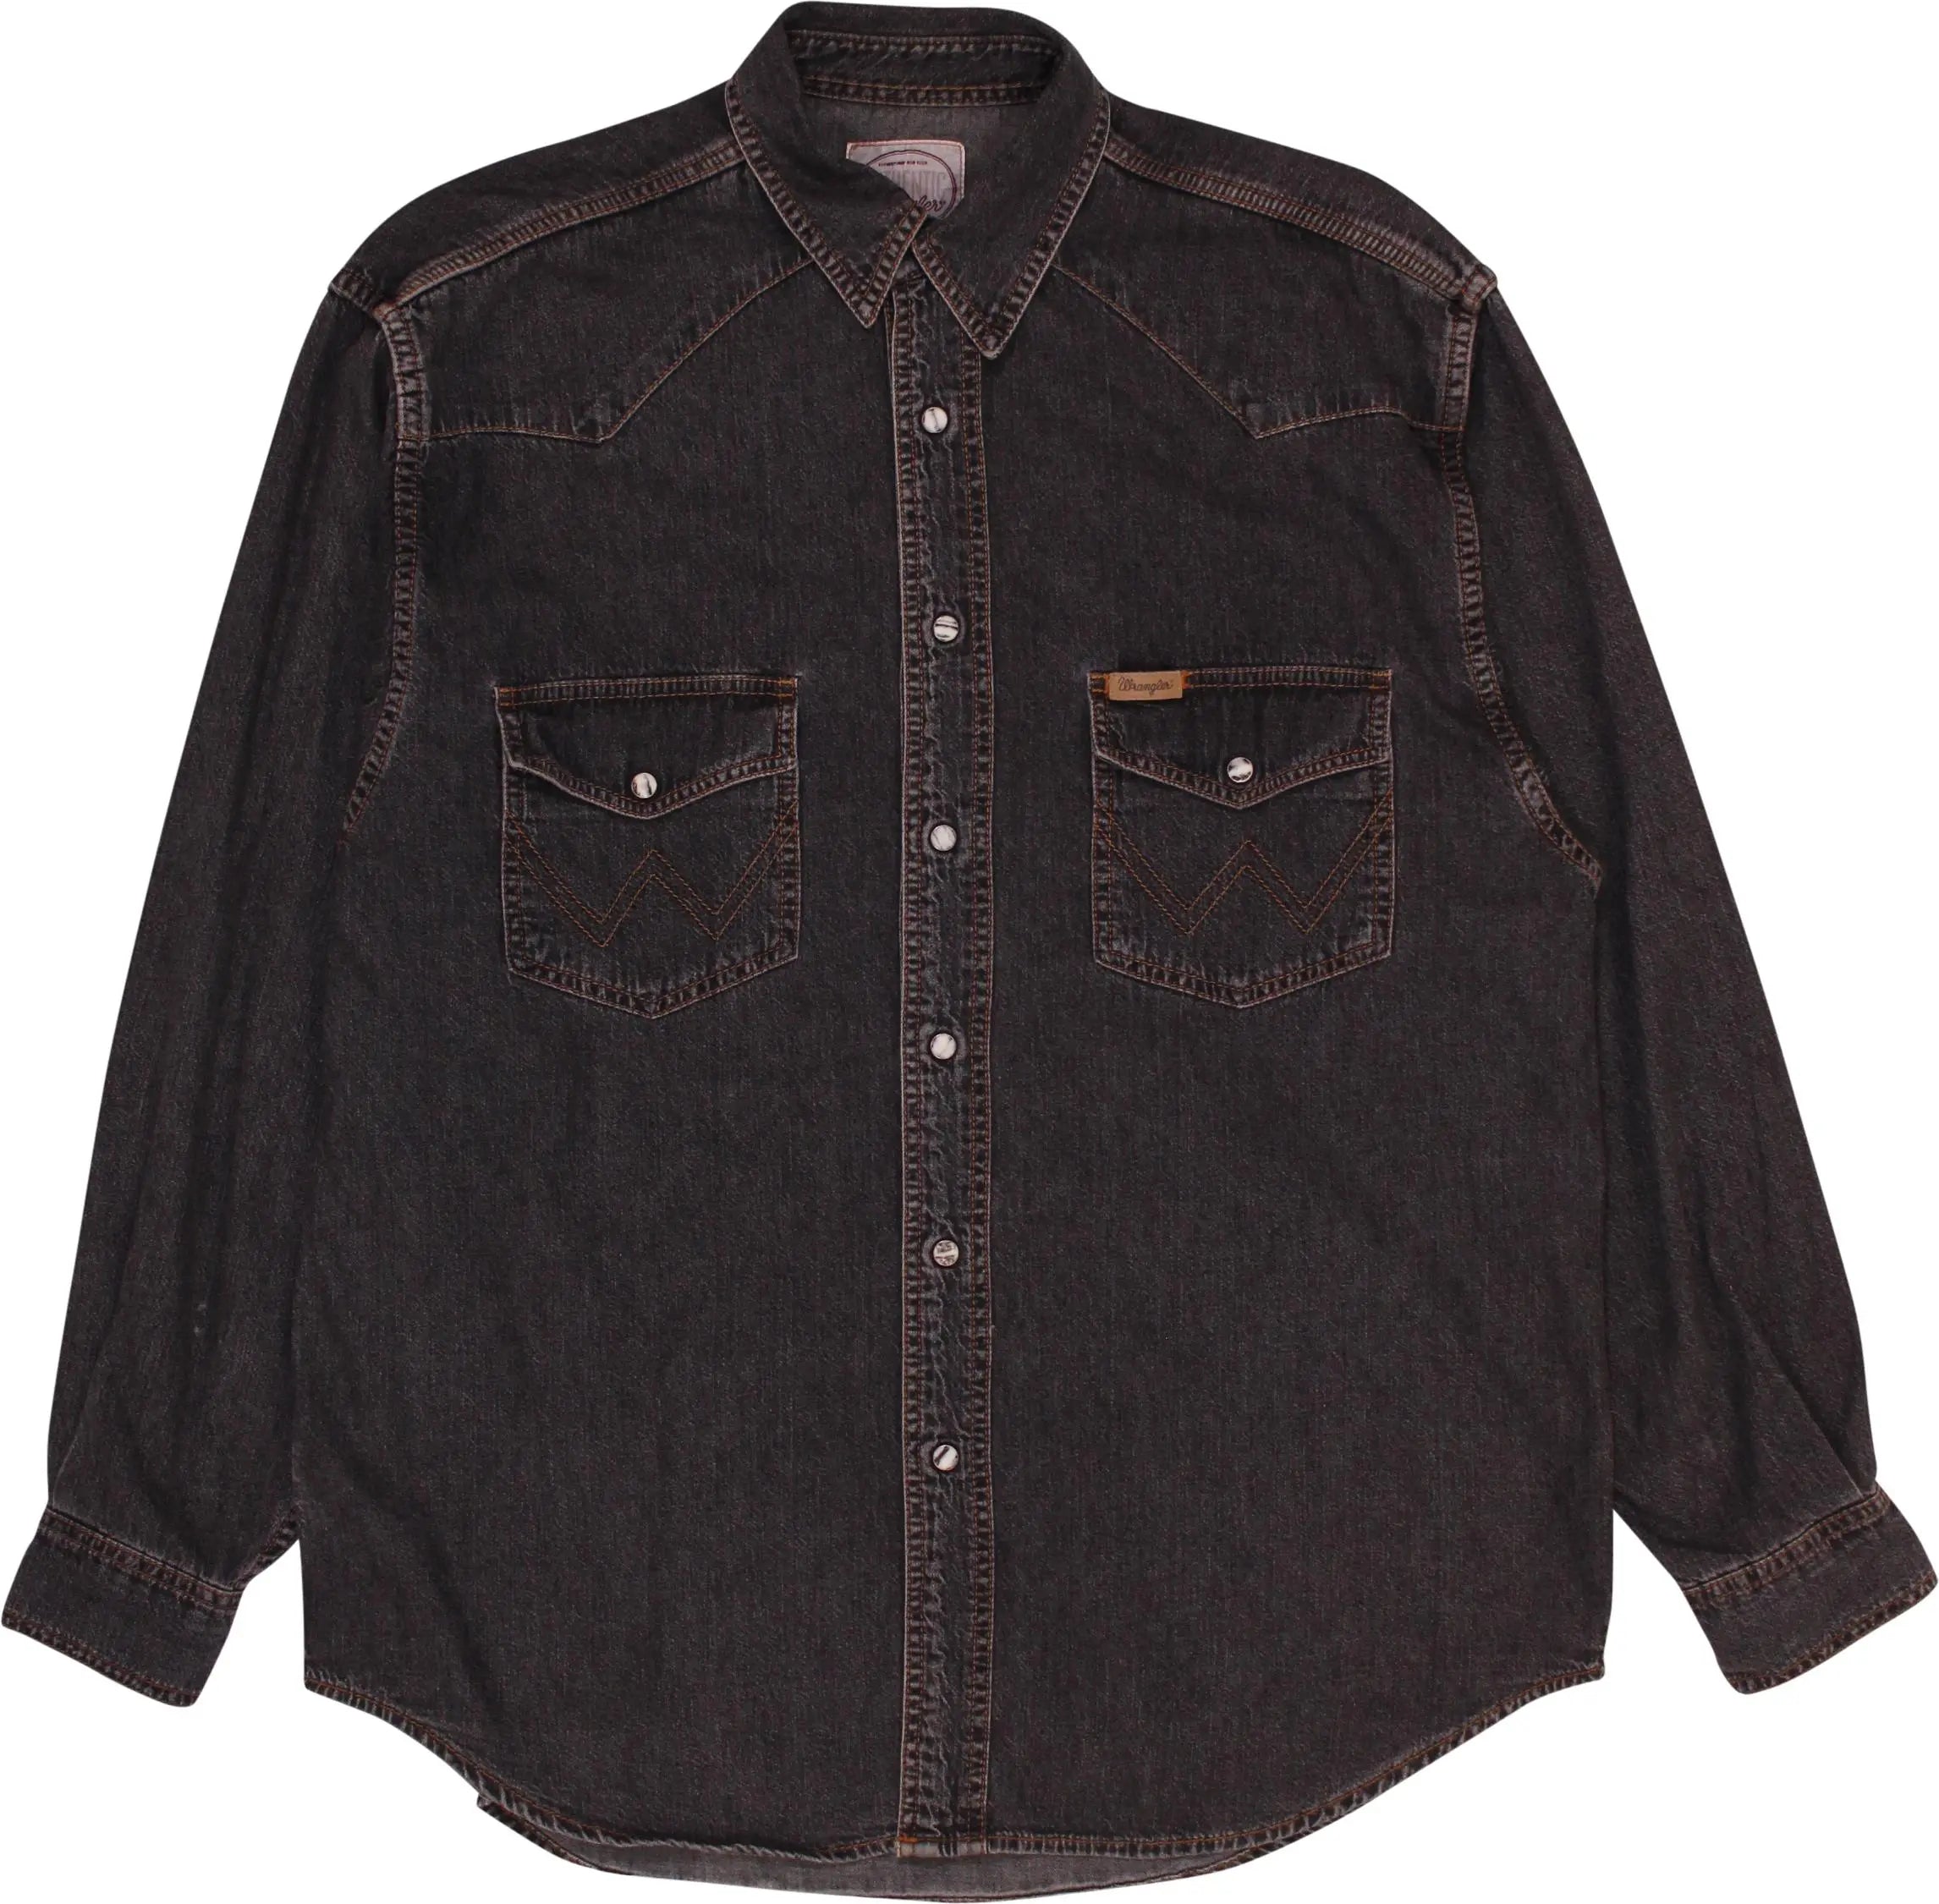 Wrangler - Wrangler Vintage Oversized Denim Shirt- ThriftTale.com - Vintage and second handclothing